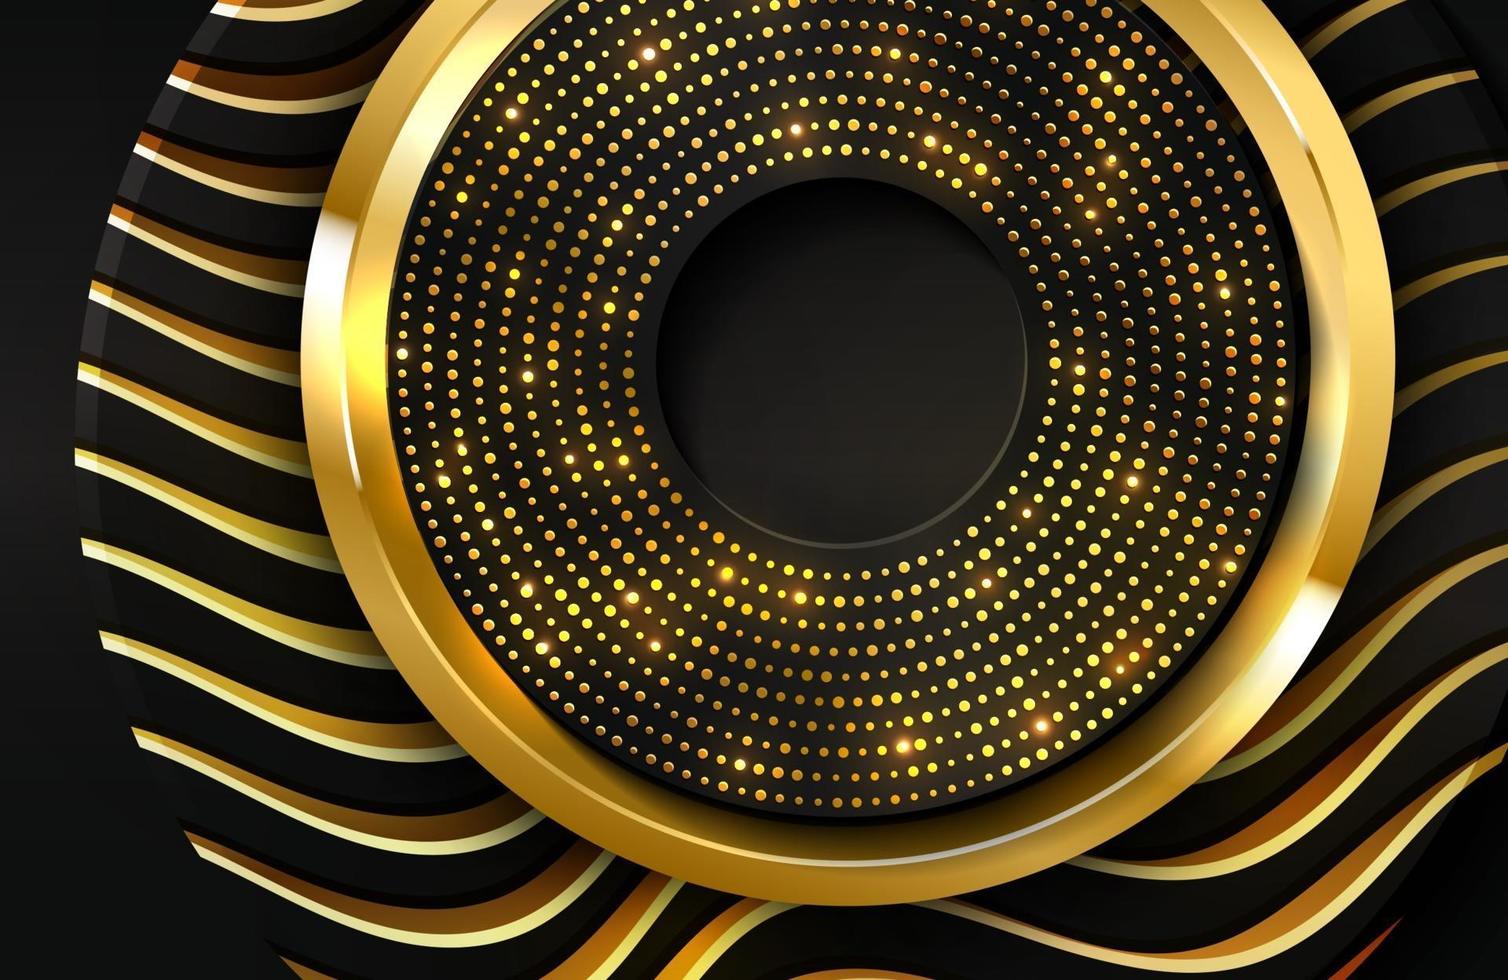 realistischer Luxushintergrund 3d mit Goldkreisform-Vektorillustration von schwarzen Kreisformen, die mit goldenen Wellenlinien texturiert werden vektor